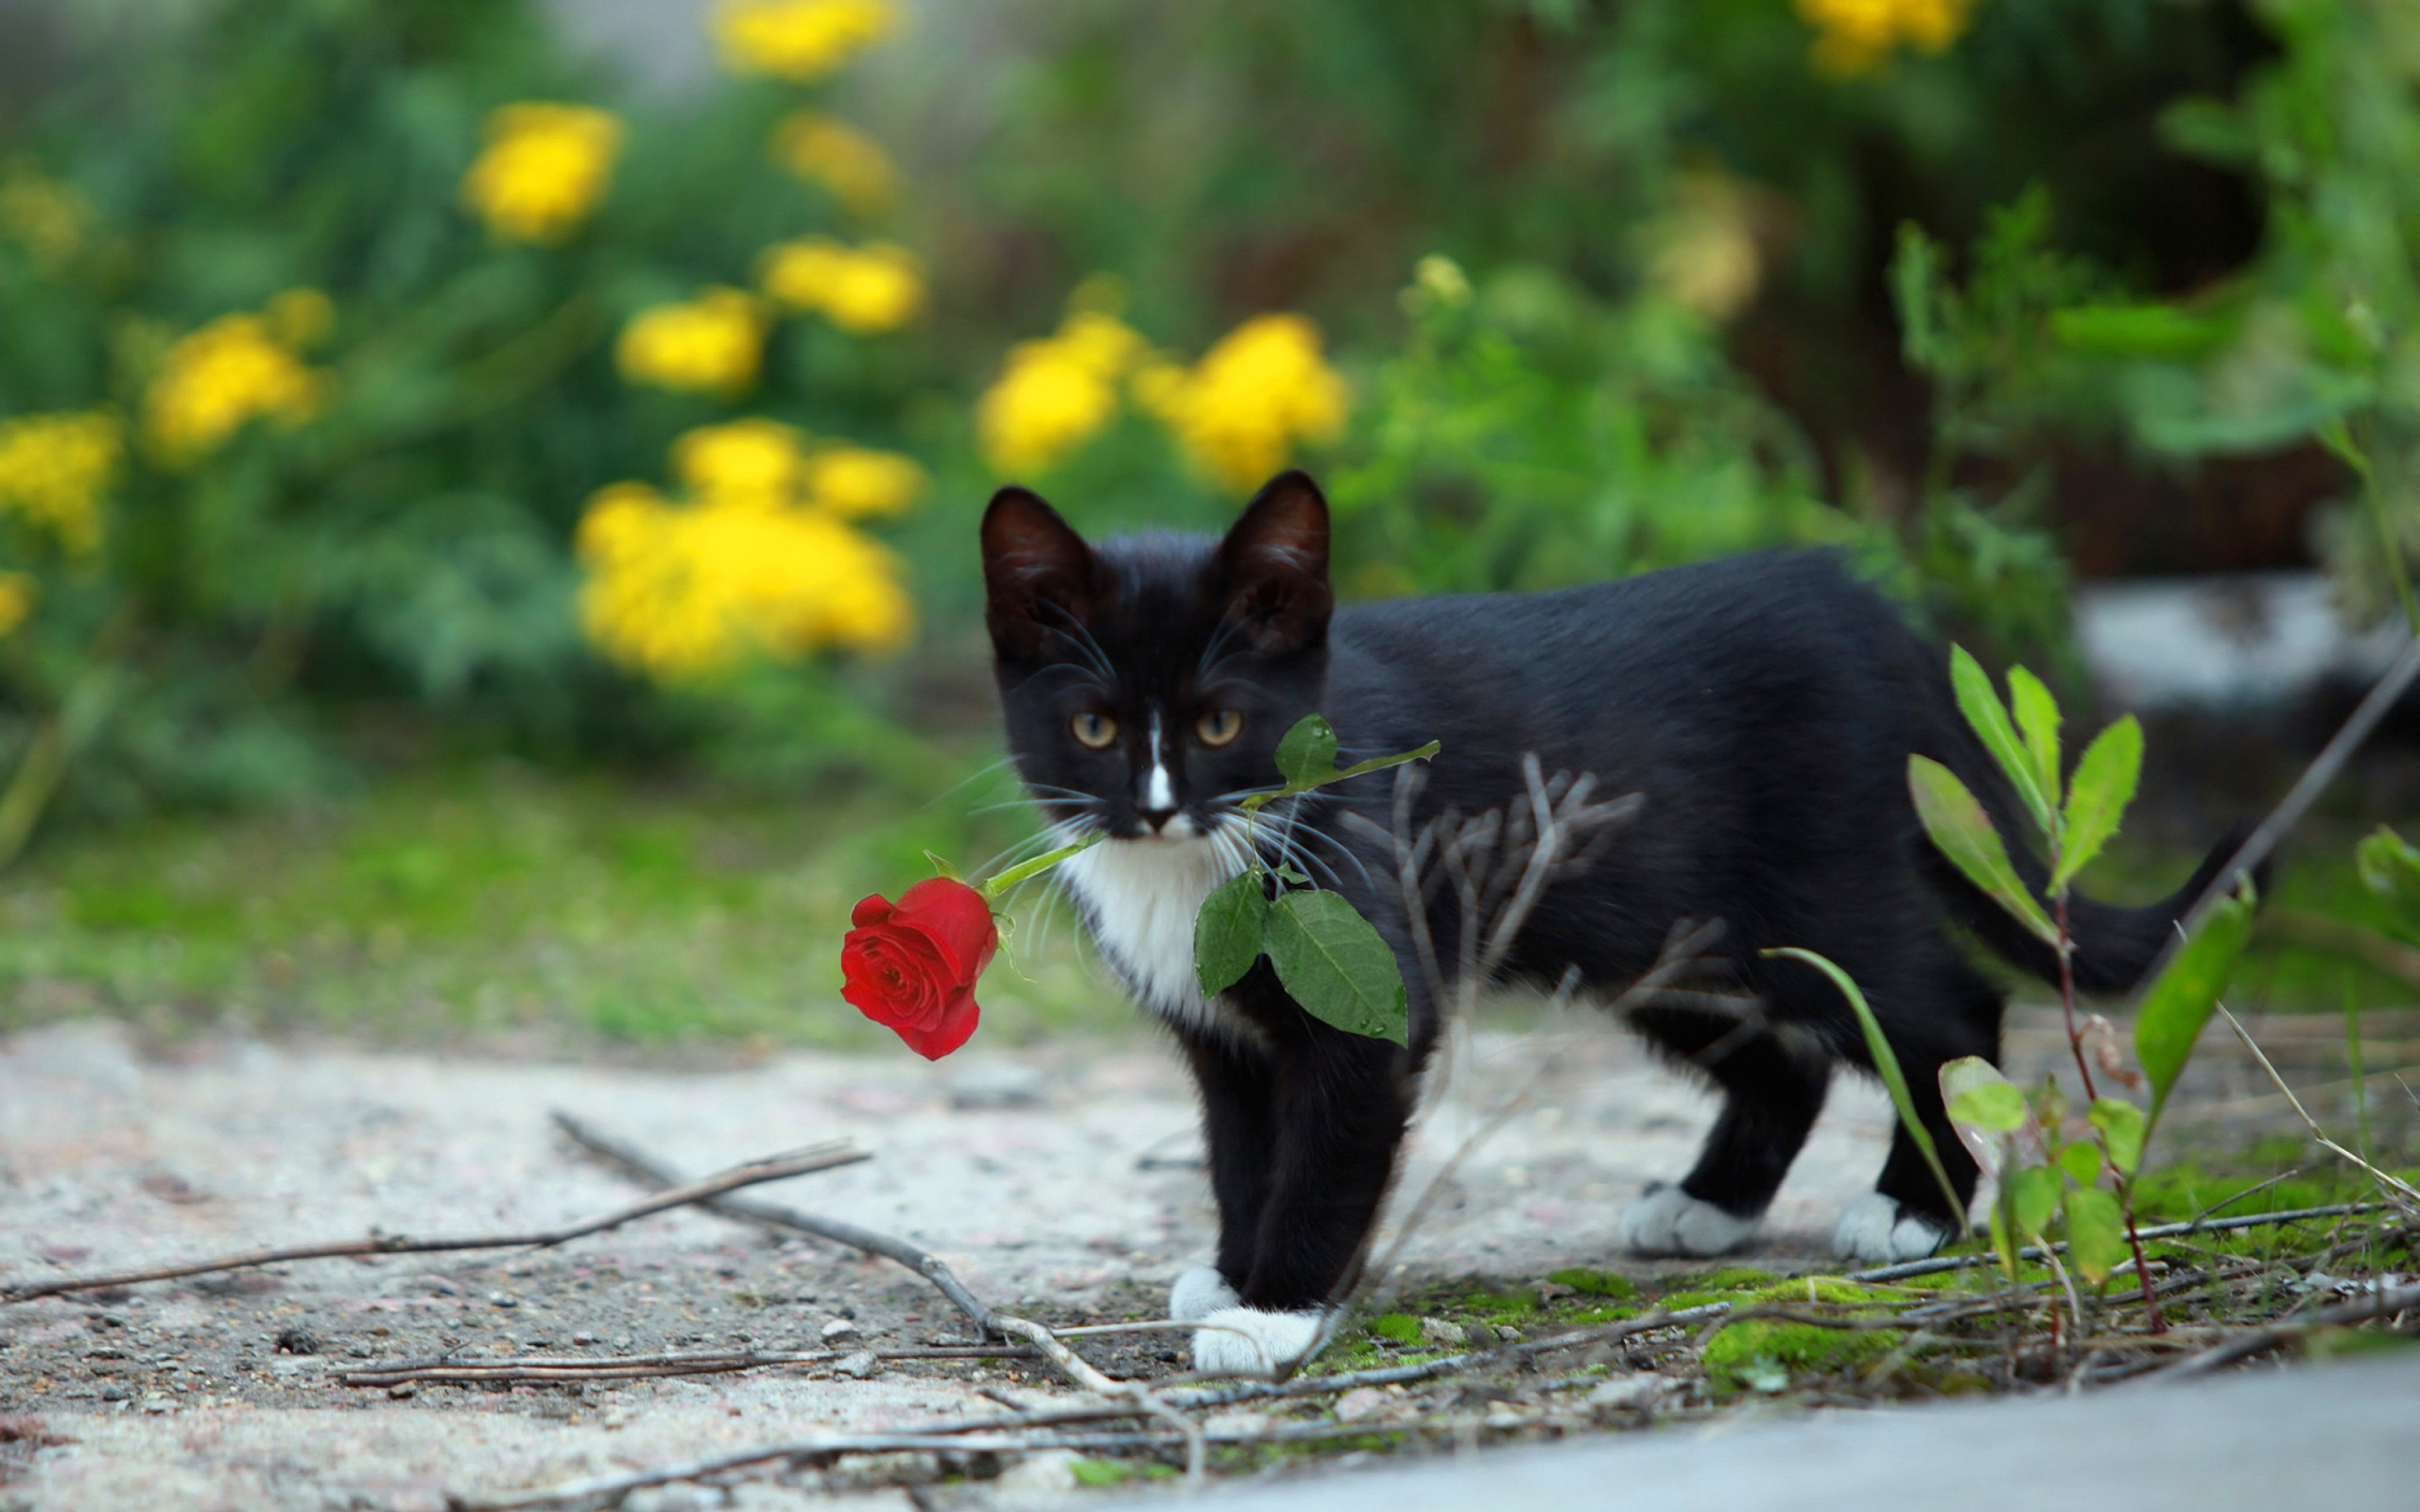 Обои Cat with Flower 2560x1600